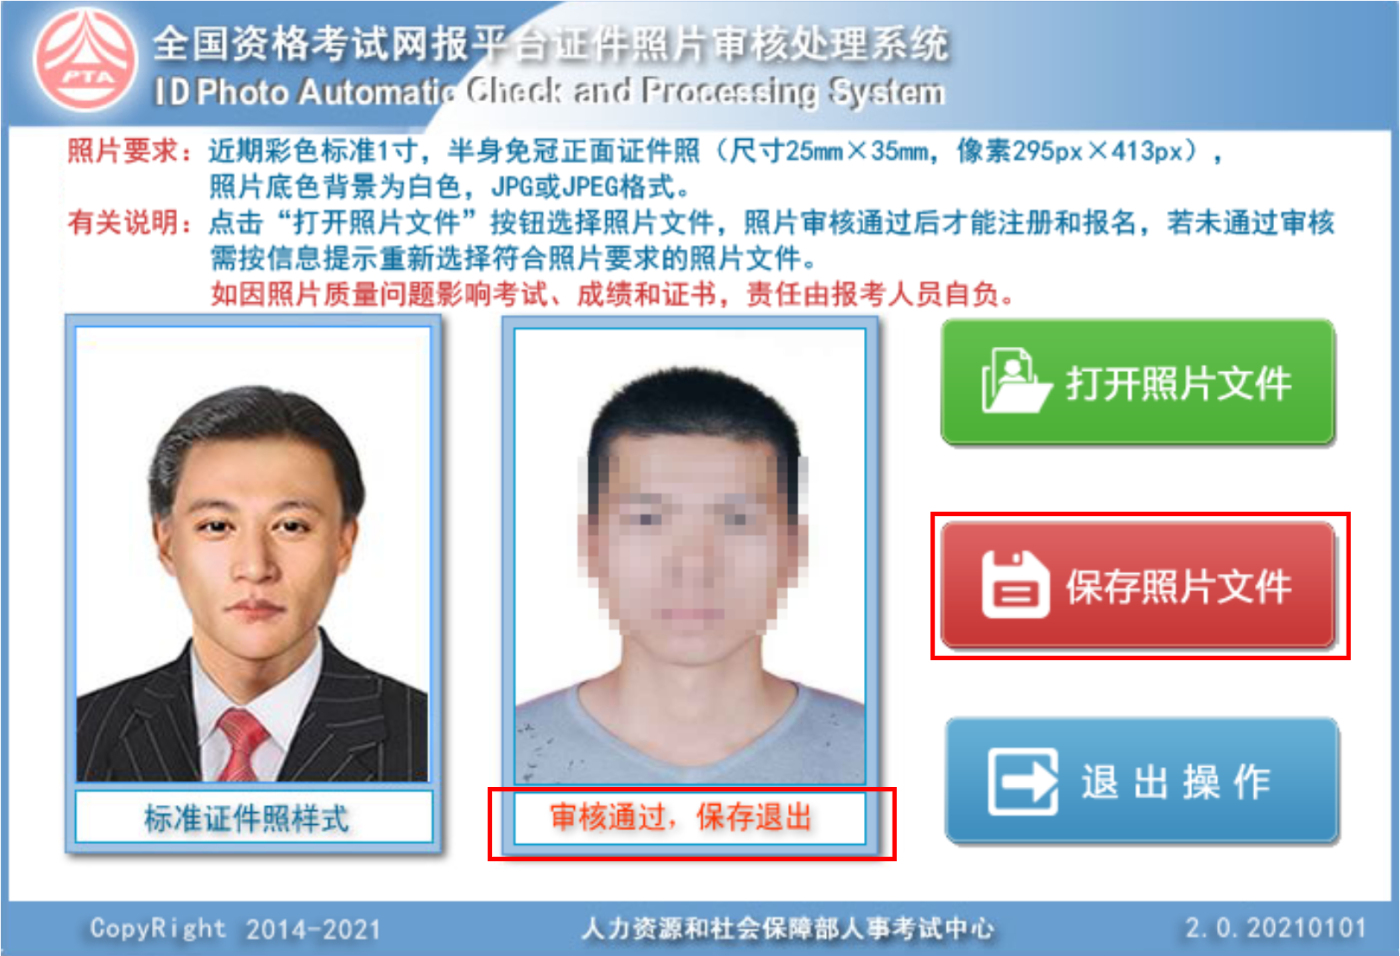 中国人事考试网的照片审核怎么弄？